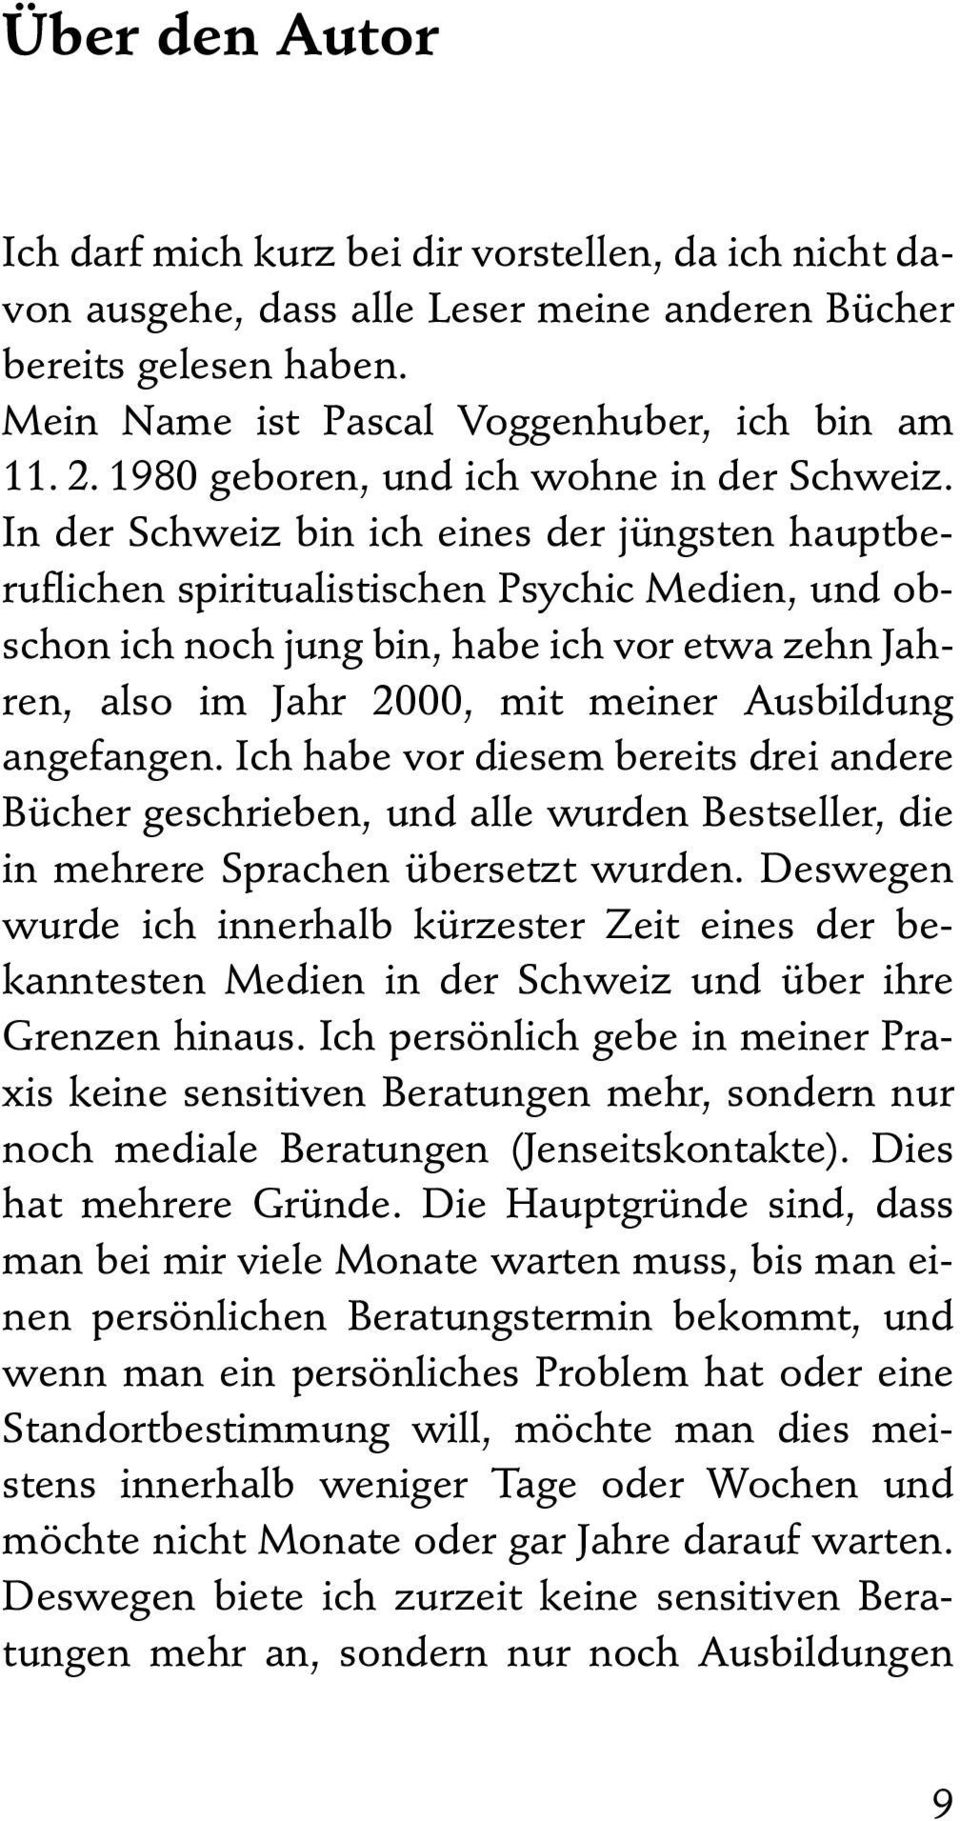 In der Schweiz bin ich eines der jüngsten hauptberuflichen spiritualistischen Psychic Medien, und obschon ich noch jung bin, habe ich vor etwa zehn Jahren, also im Jahr 2000, mit meiner Ausbildung